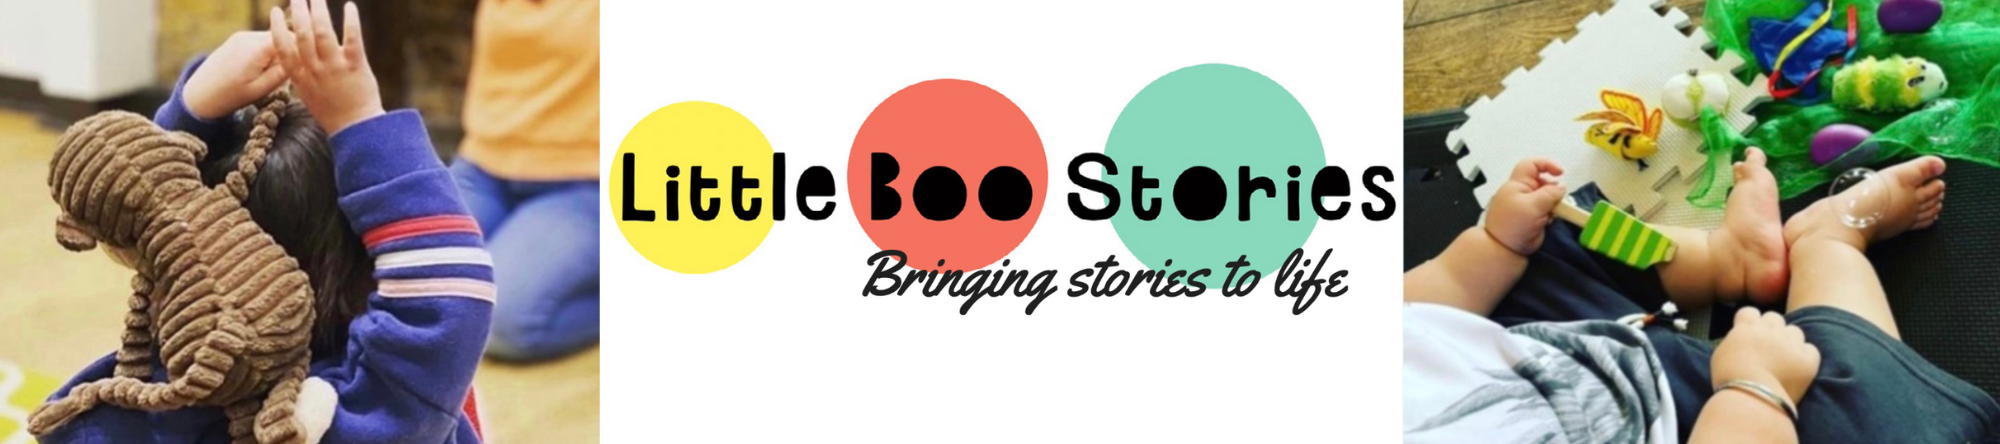 Little Boo Stories